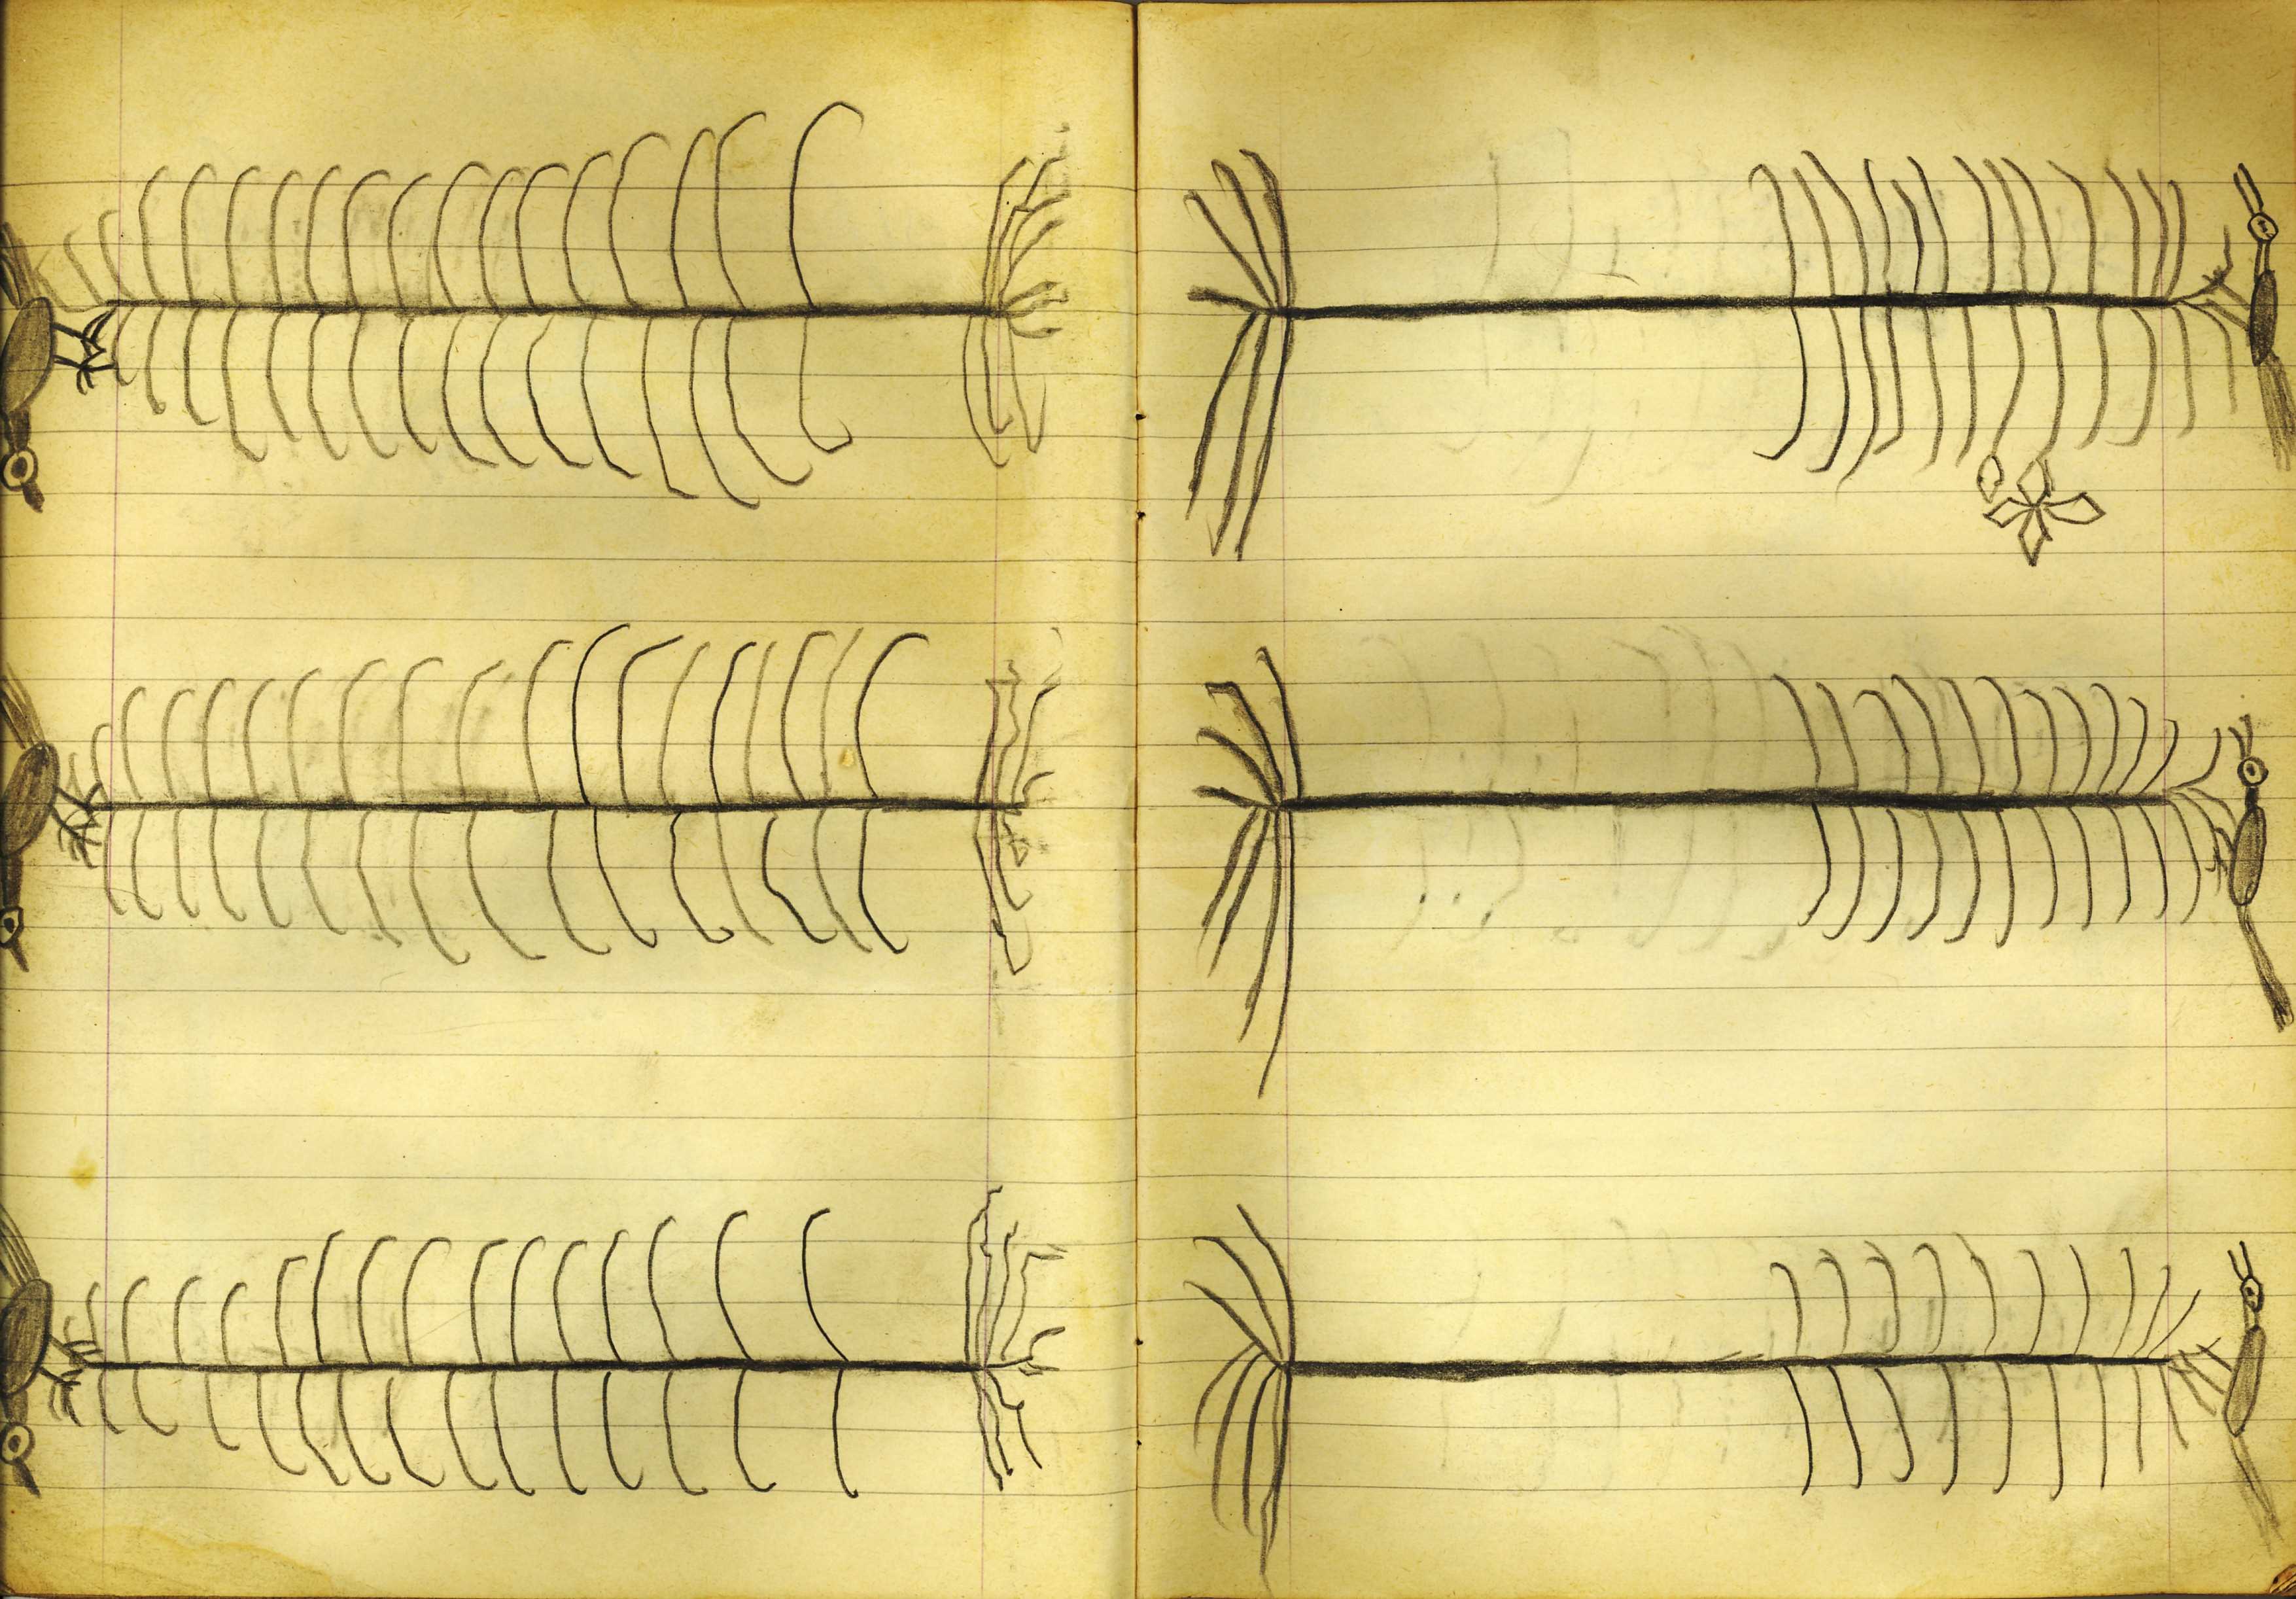 Senza Titolo, Quaderno di disegni (1) (taccuino di disegni, insieme) di Sopetti, Luigi - ambito manicomiale (inizio XX secolo)